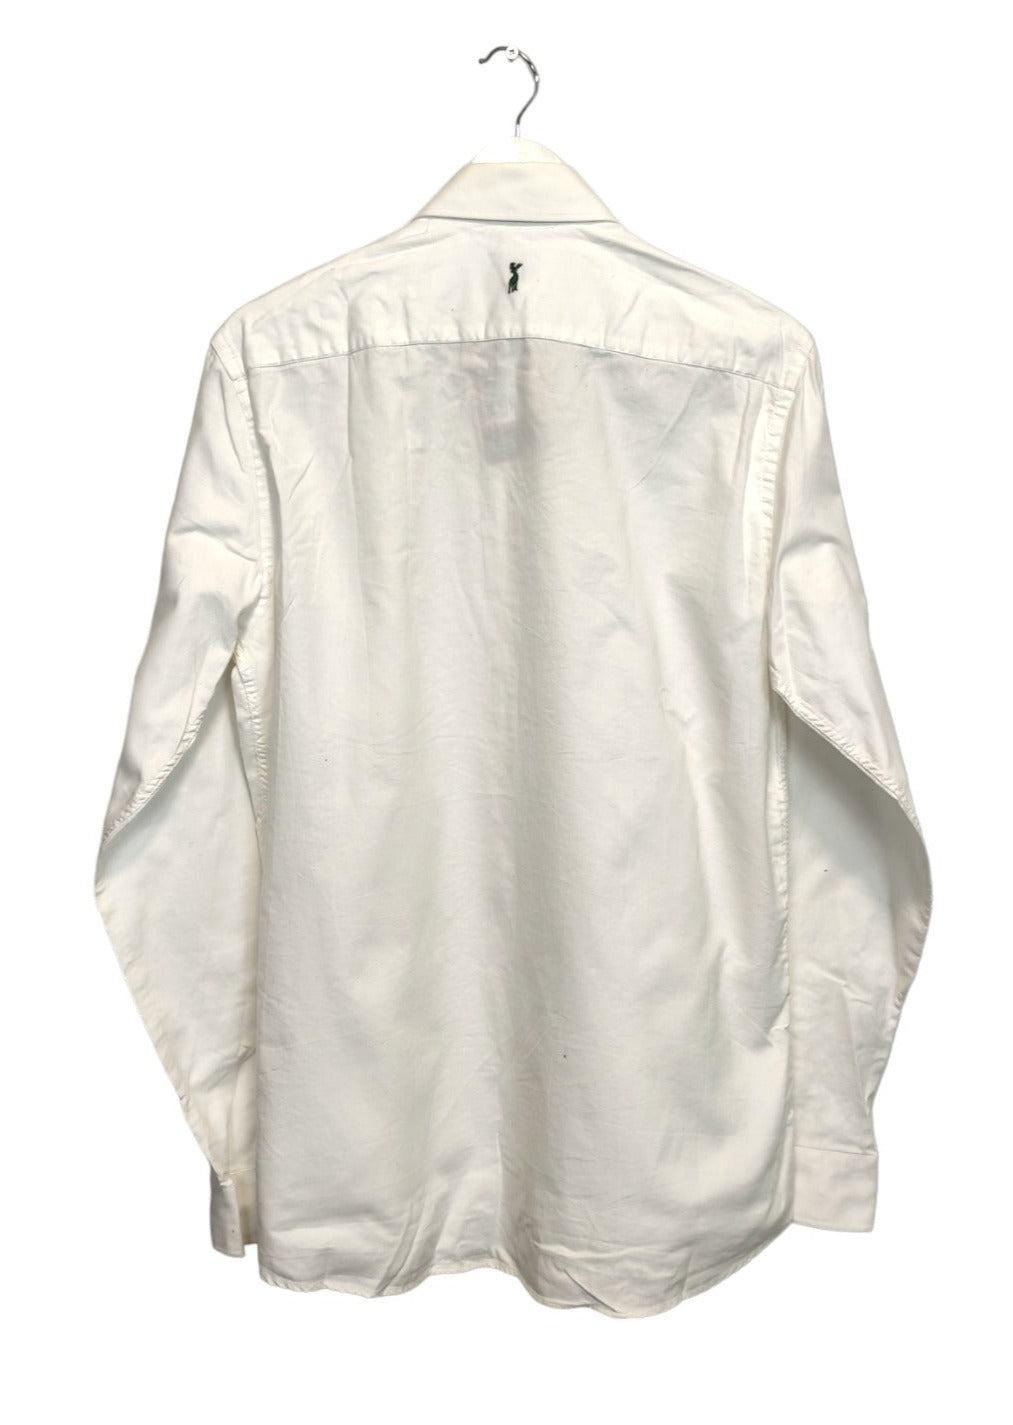 Ανδρικό Πουκάμισο ALMSACH σε Λευκό Χρώμα (41-42/M)